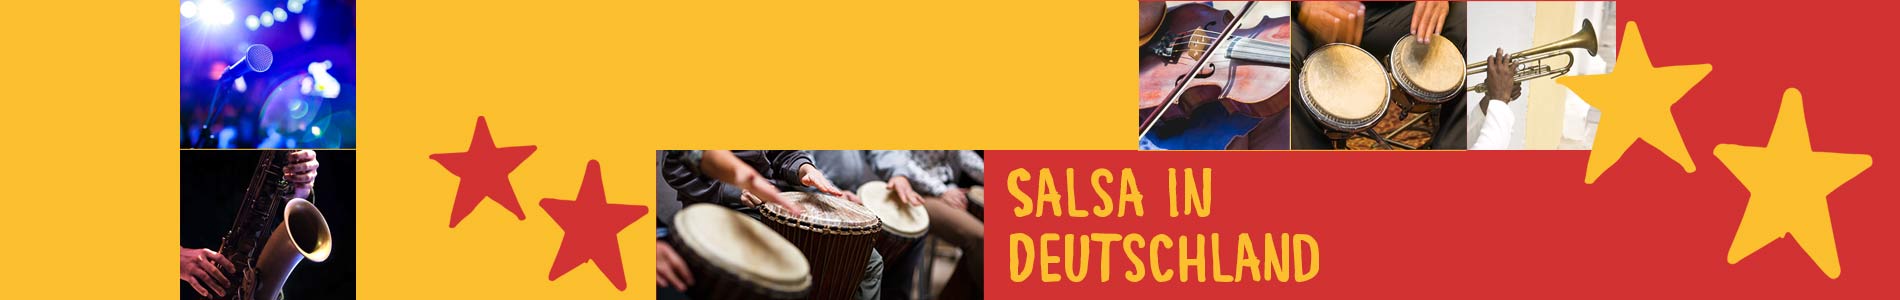 Salsa in Deggingen – Salsa lernen und tanzen, Tanzkurse, Partys, Veranstaltungen